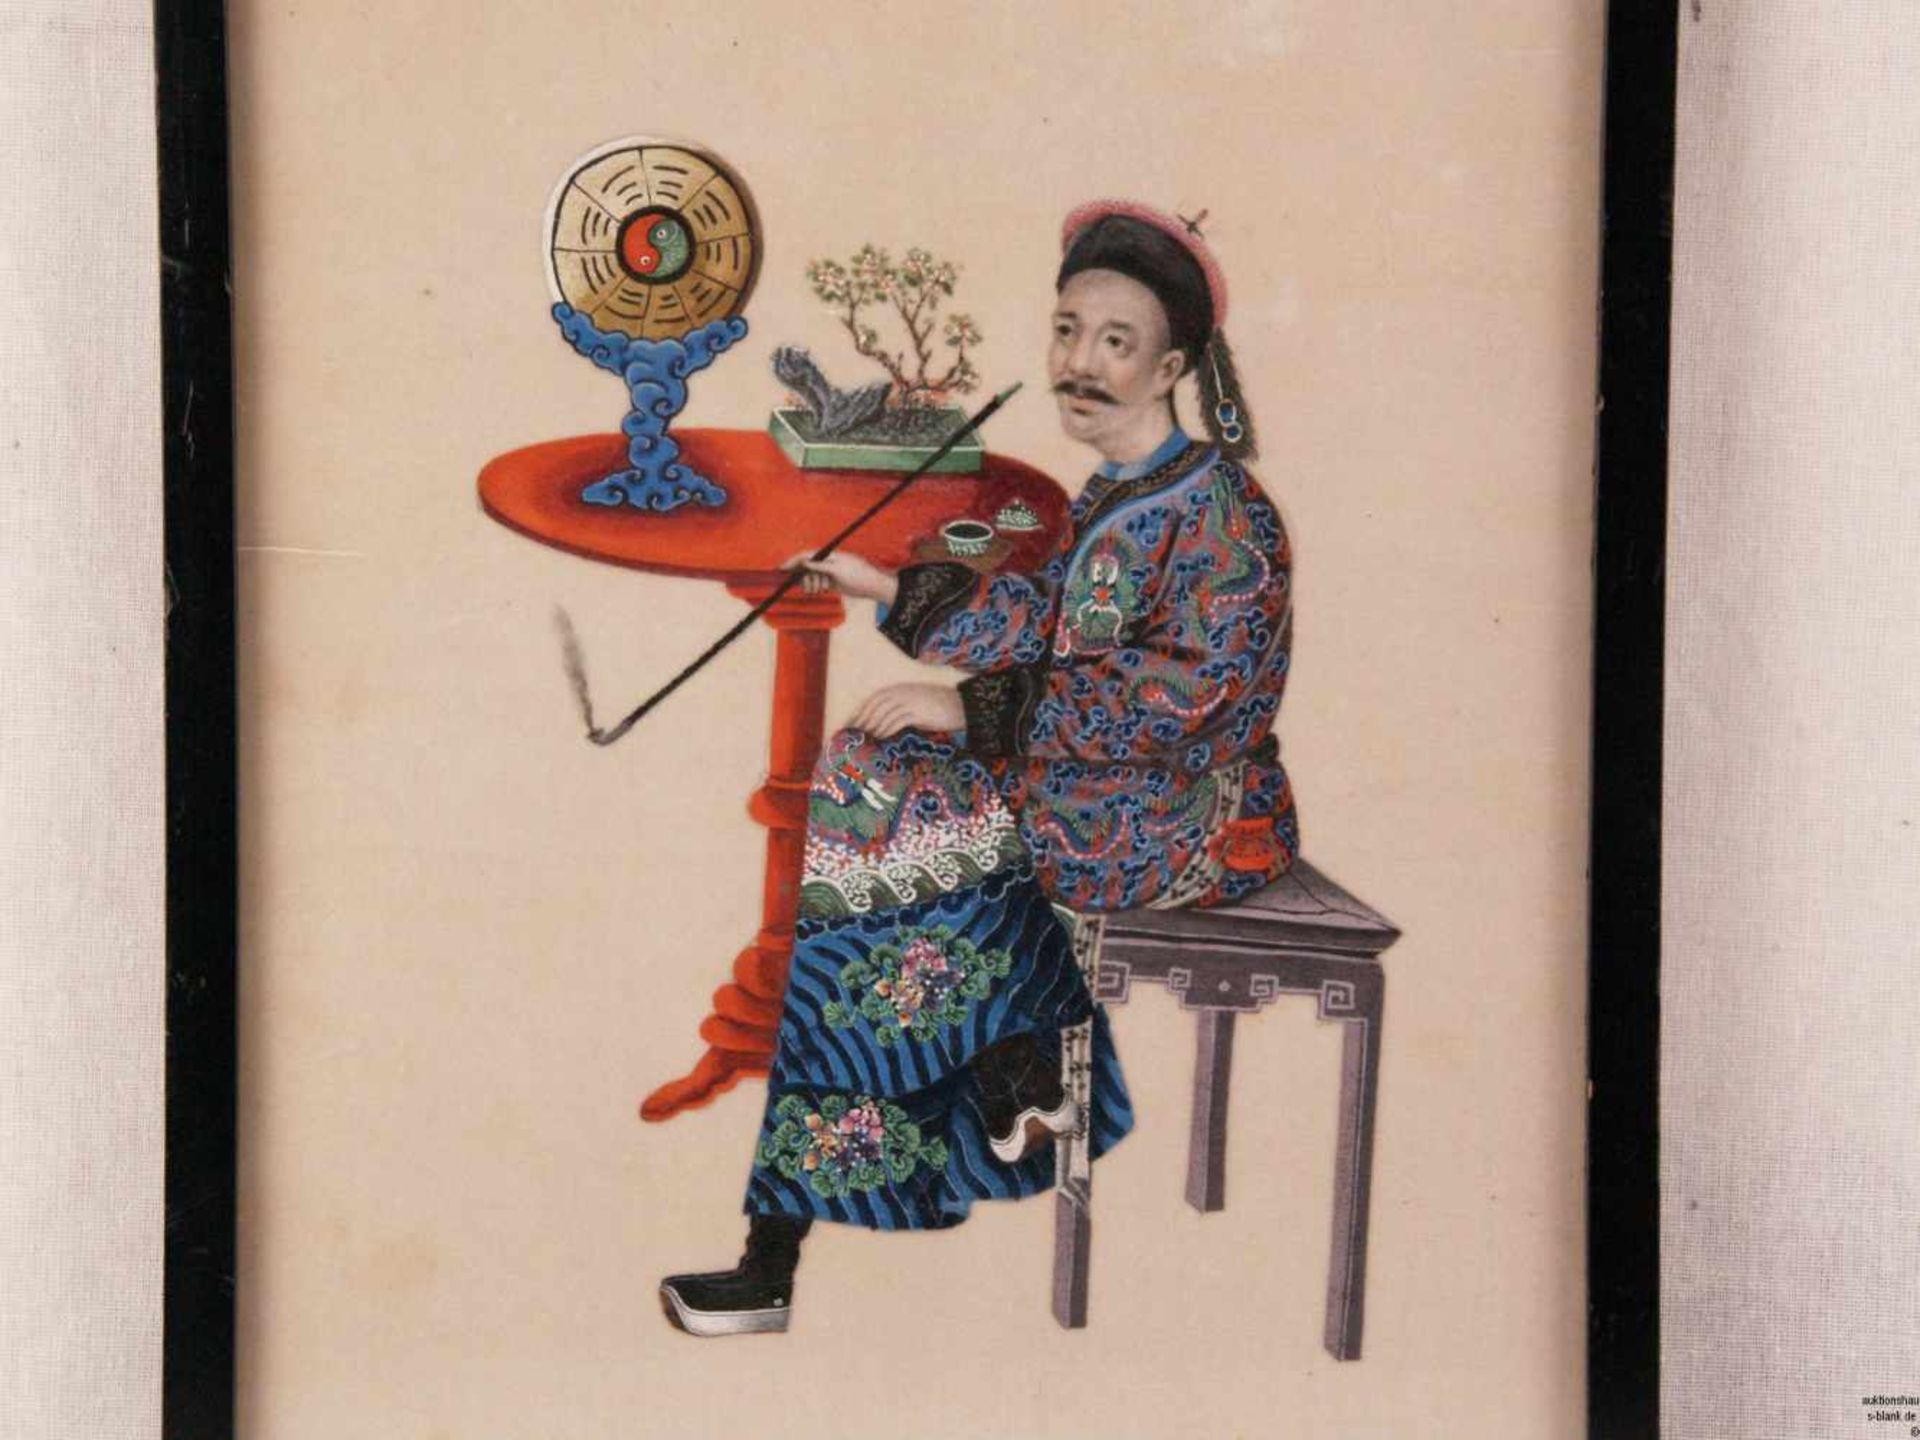 Zwei Darstellungen von Aristokraten - China, polychrome Pinselmalerei auf Reispapier, 1x Pfeife - Bild 2 aus 7